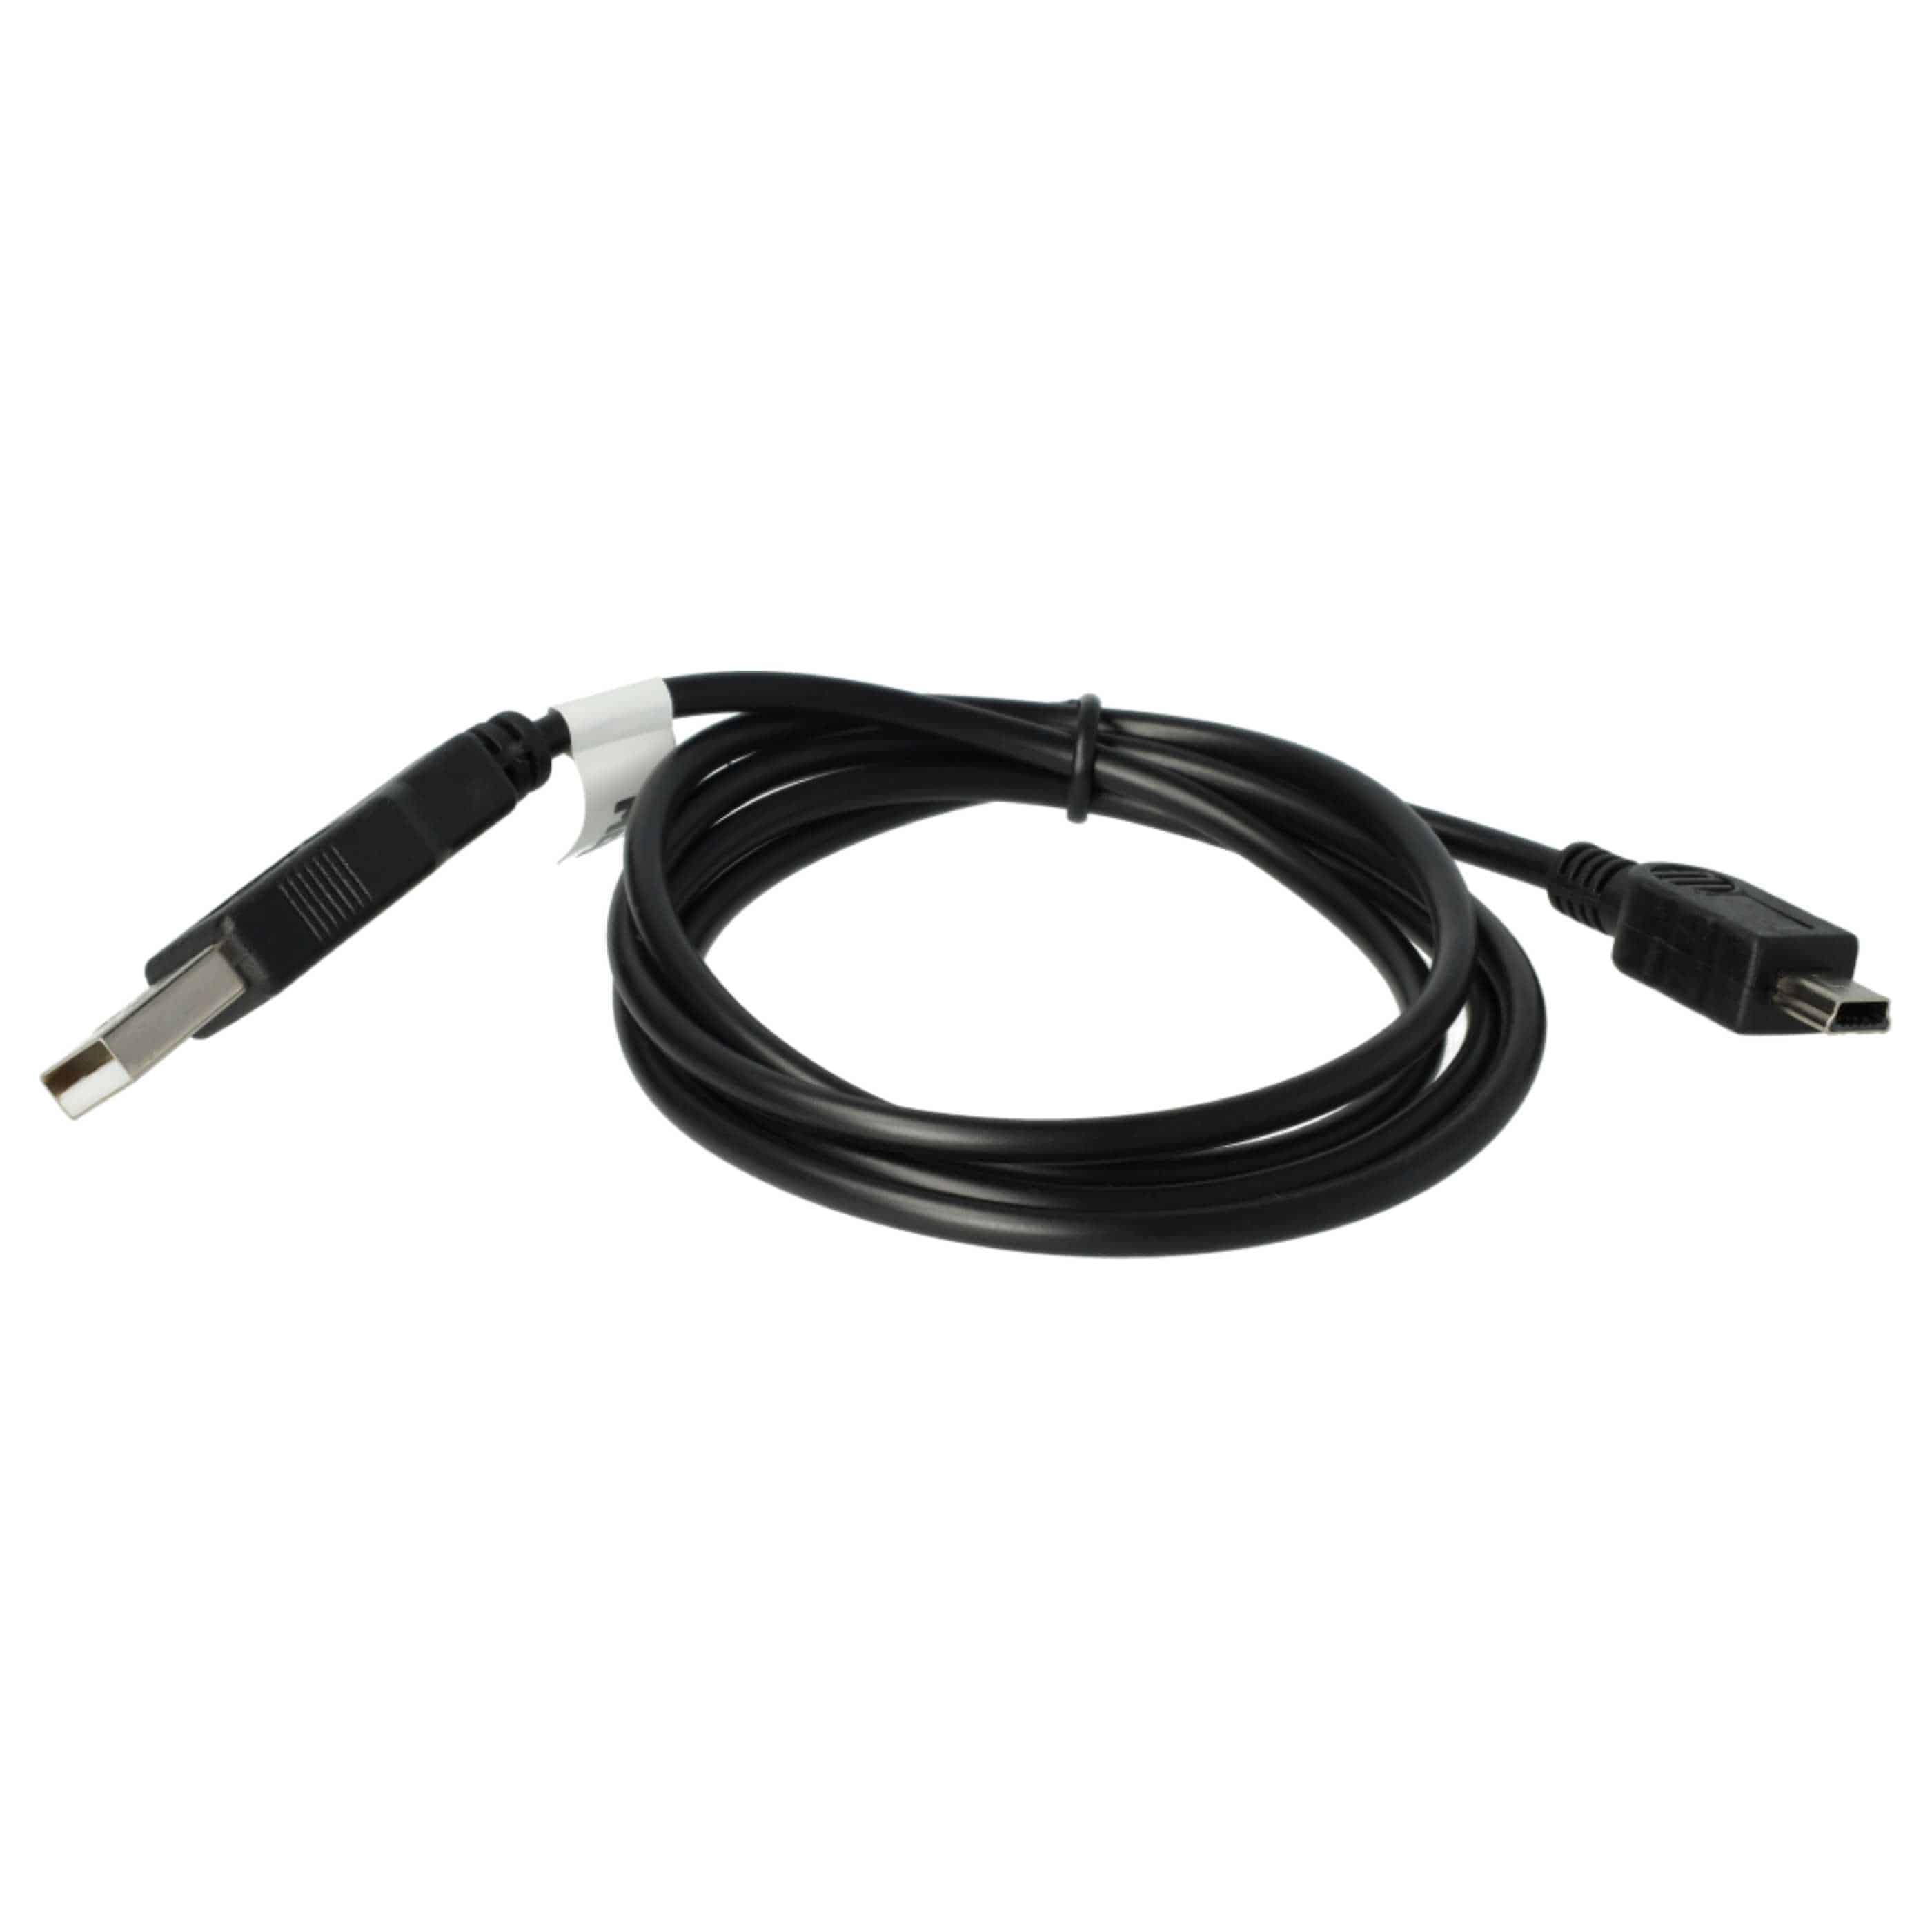 Cable datos USB para móvil Nokia E51 - cable de carga 2 en 1, 100cm